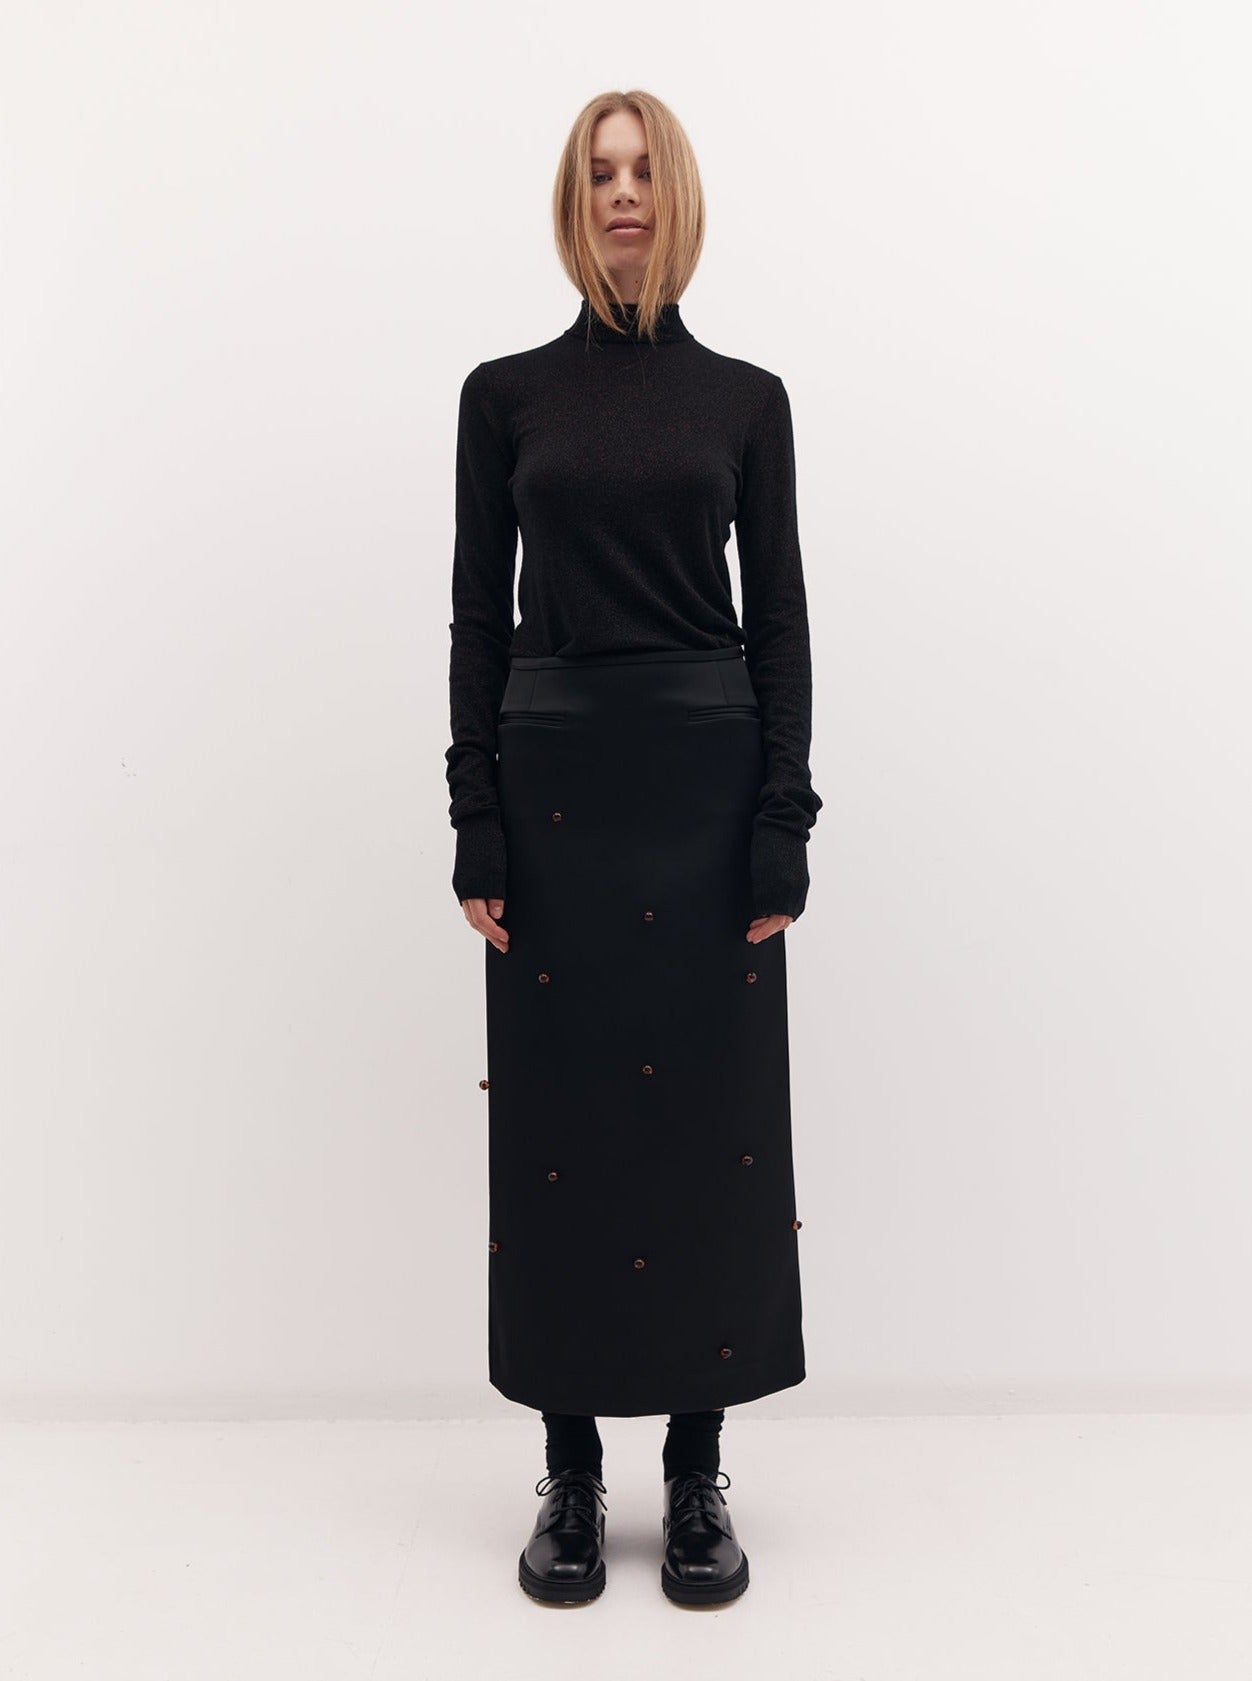 Beaded Holly Skirt: Black Bonded Satin